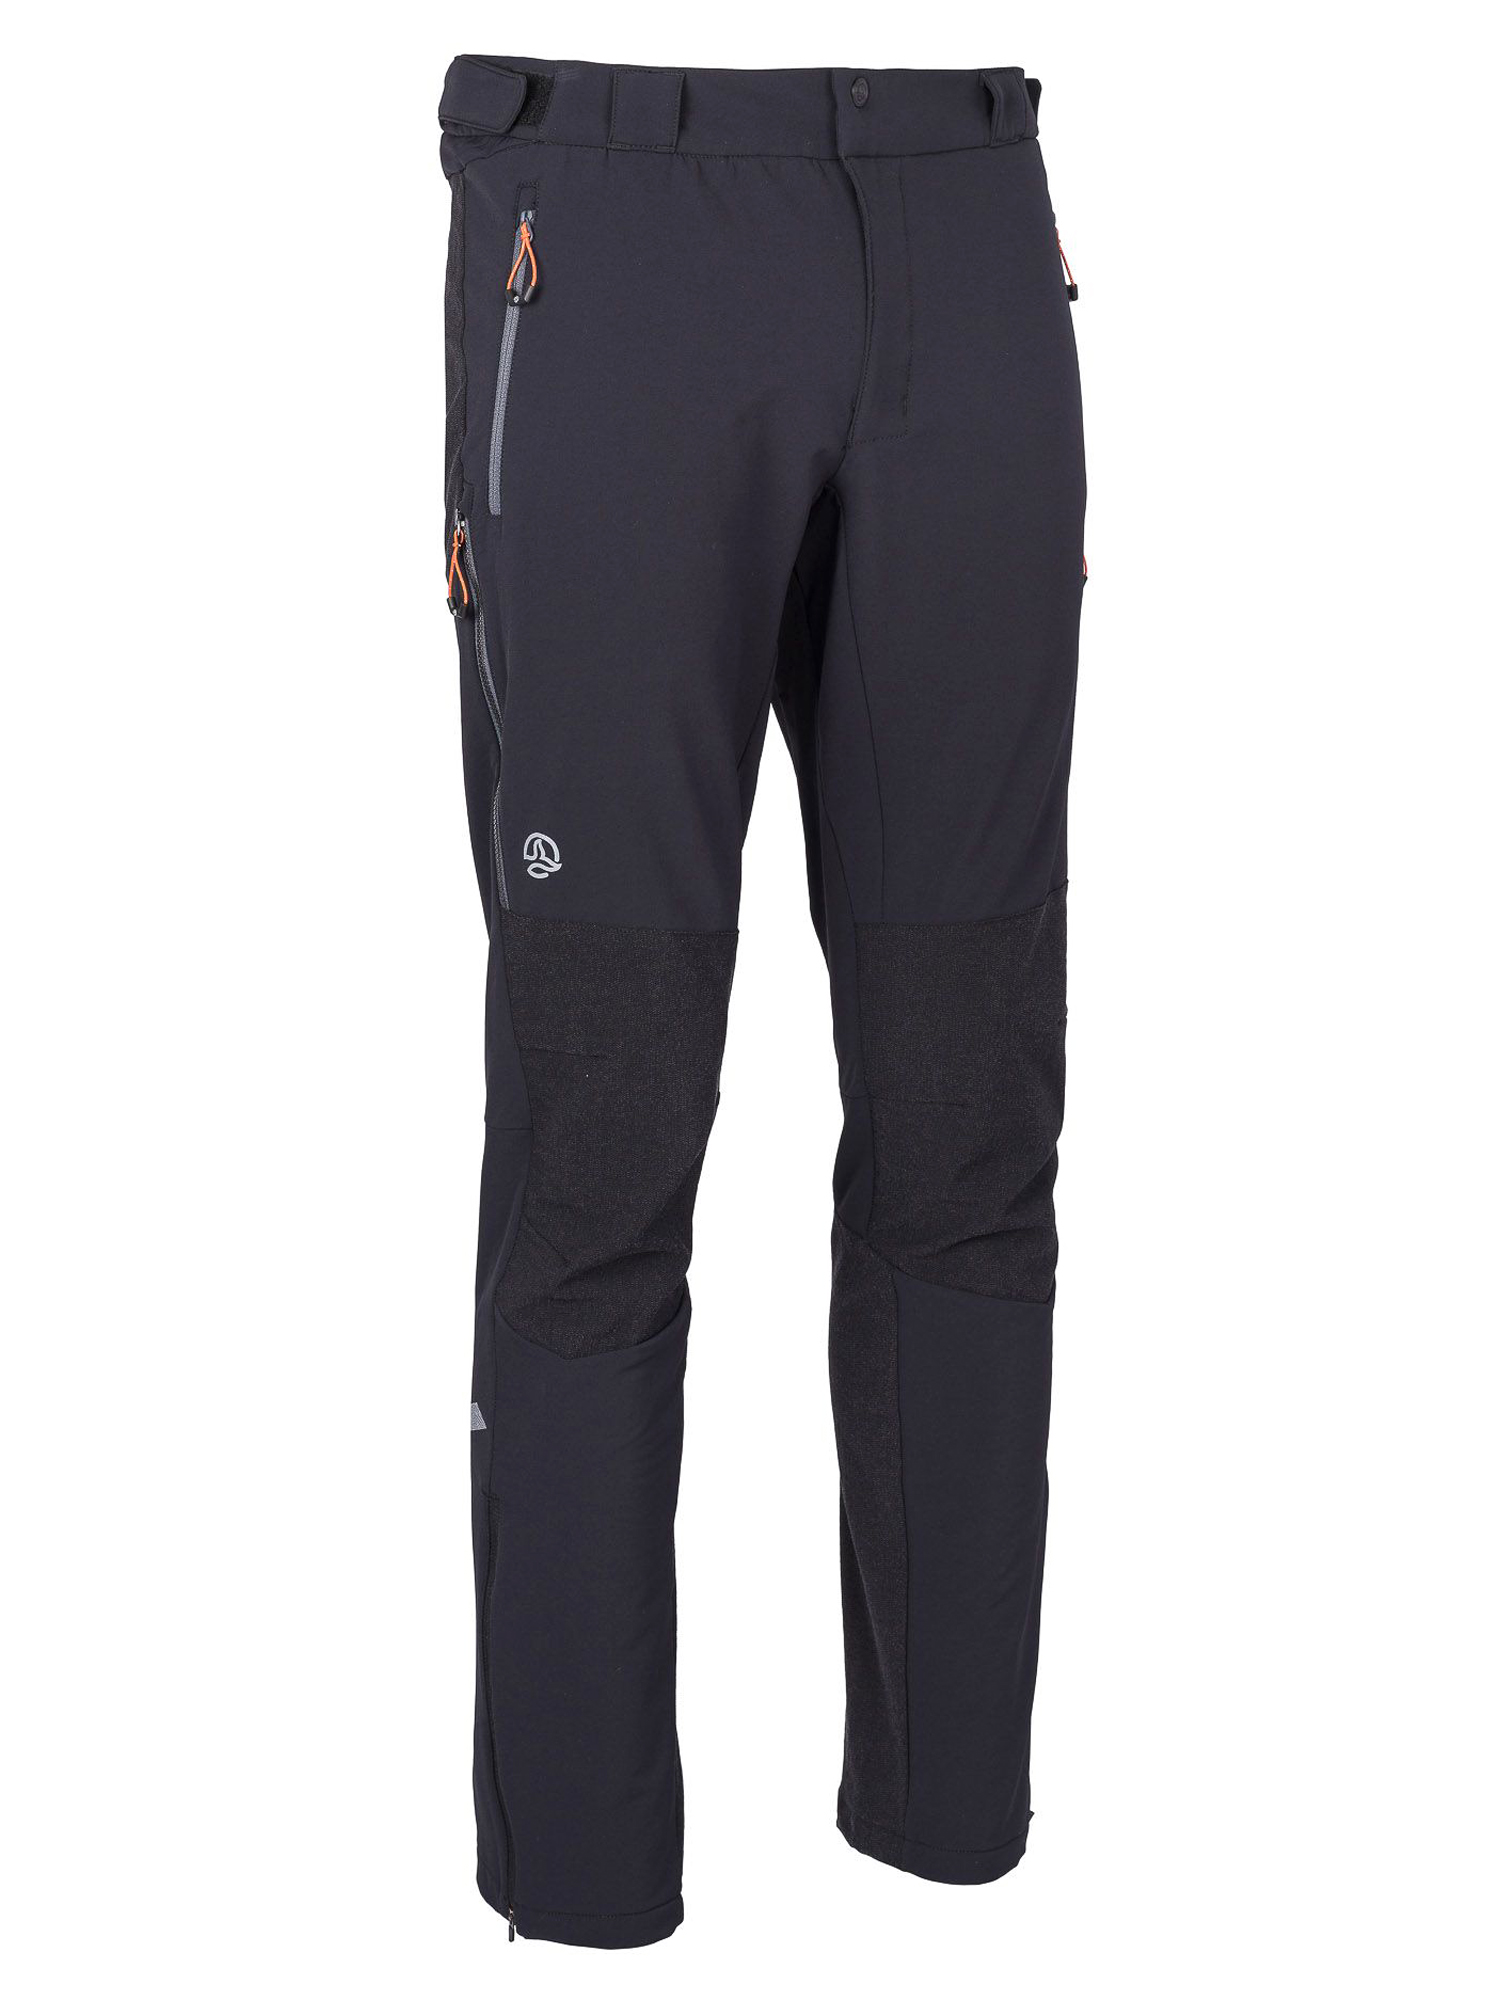 Спортивные брюки мужские Ternua Elbrus Pt M черные M